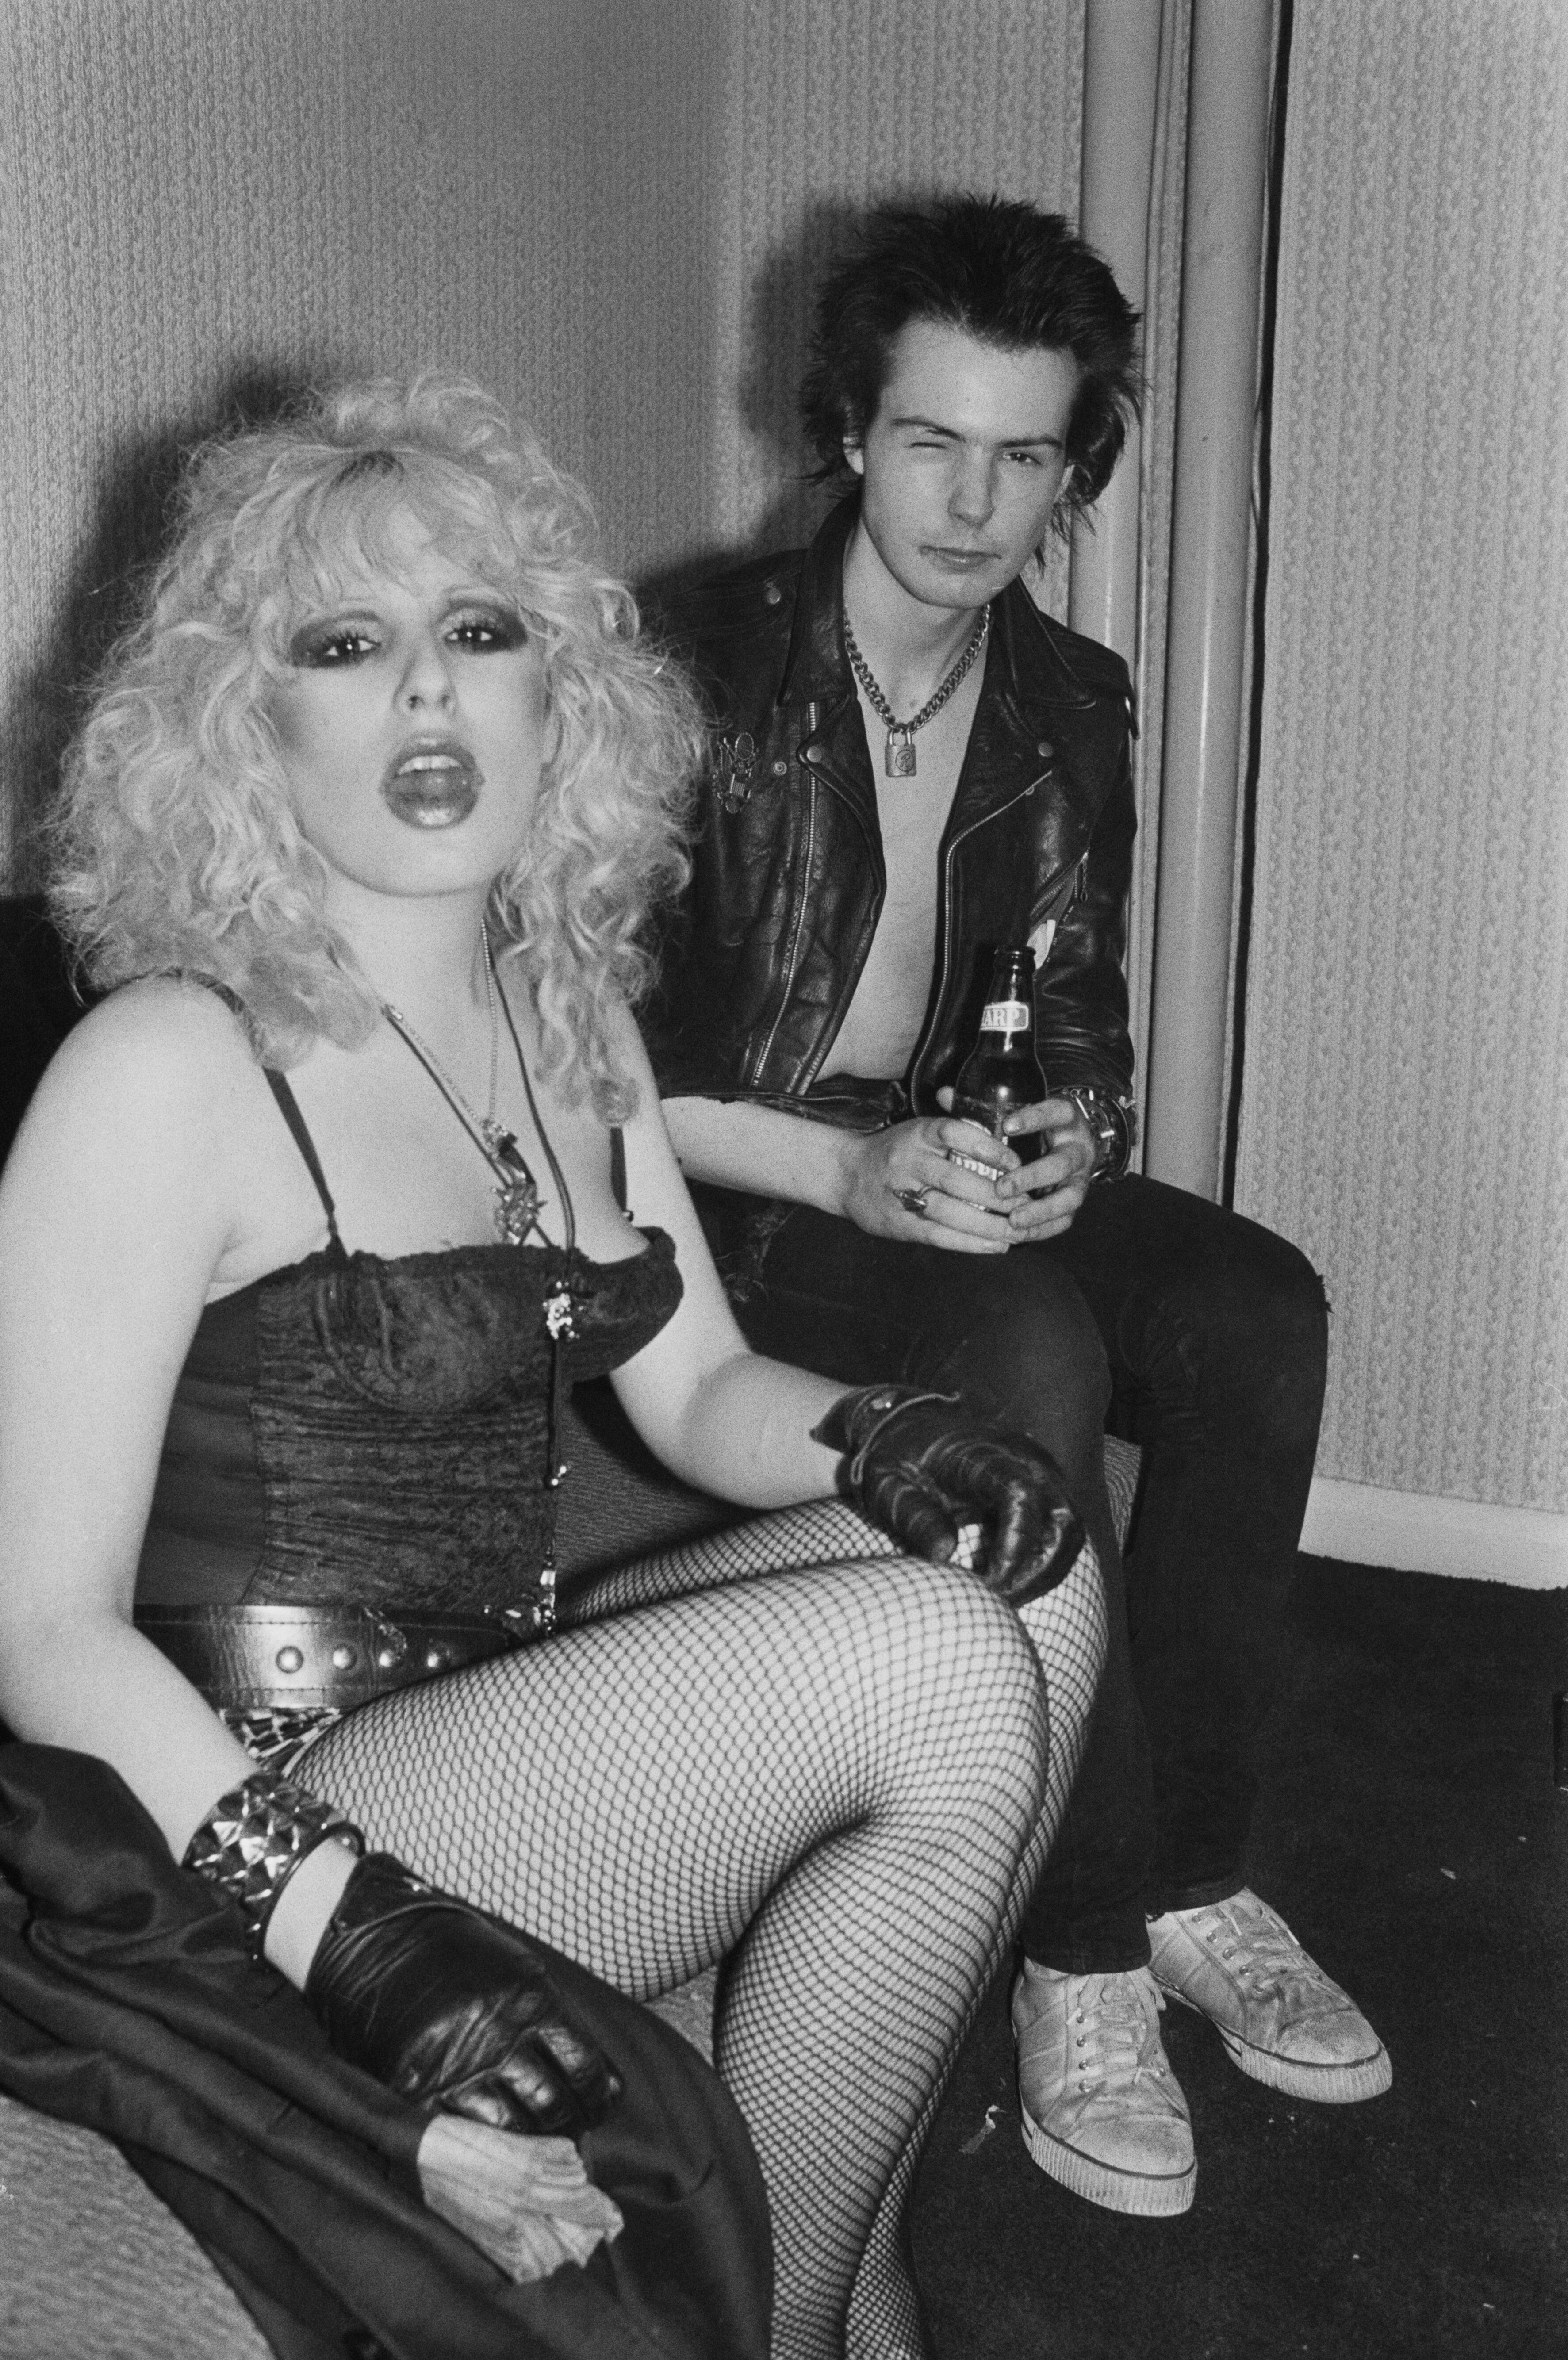 Nancy e Sid, agosto 1978. Nancy Spungen è stata una figura di spicco del punk rock inglese degli anni Settanta ed nota per essere stata la fidanzata del bassista dei Sex Pistols, Sid Vicious. Fu assassinata dal compagno con un colpo da taglio all'addome nell'appartamento del Chelsea Hotel dove risiedeva con lui. Era il 12 ottobre 1978, aveva vent'anni.